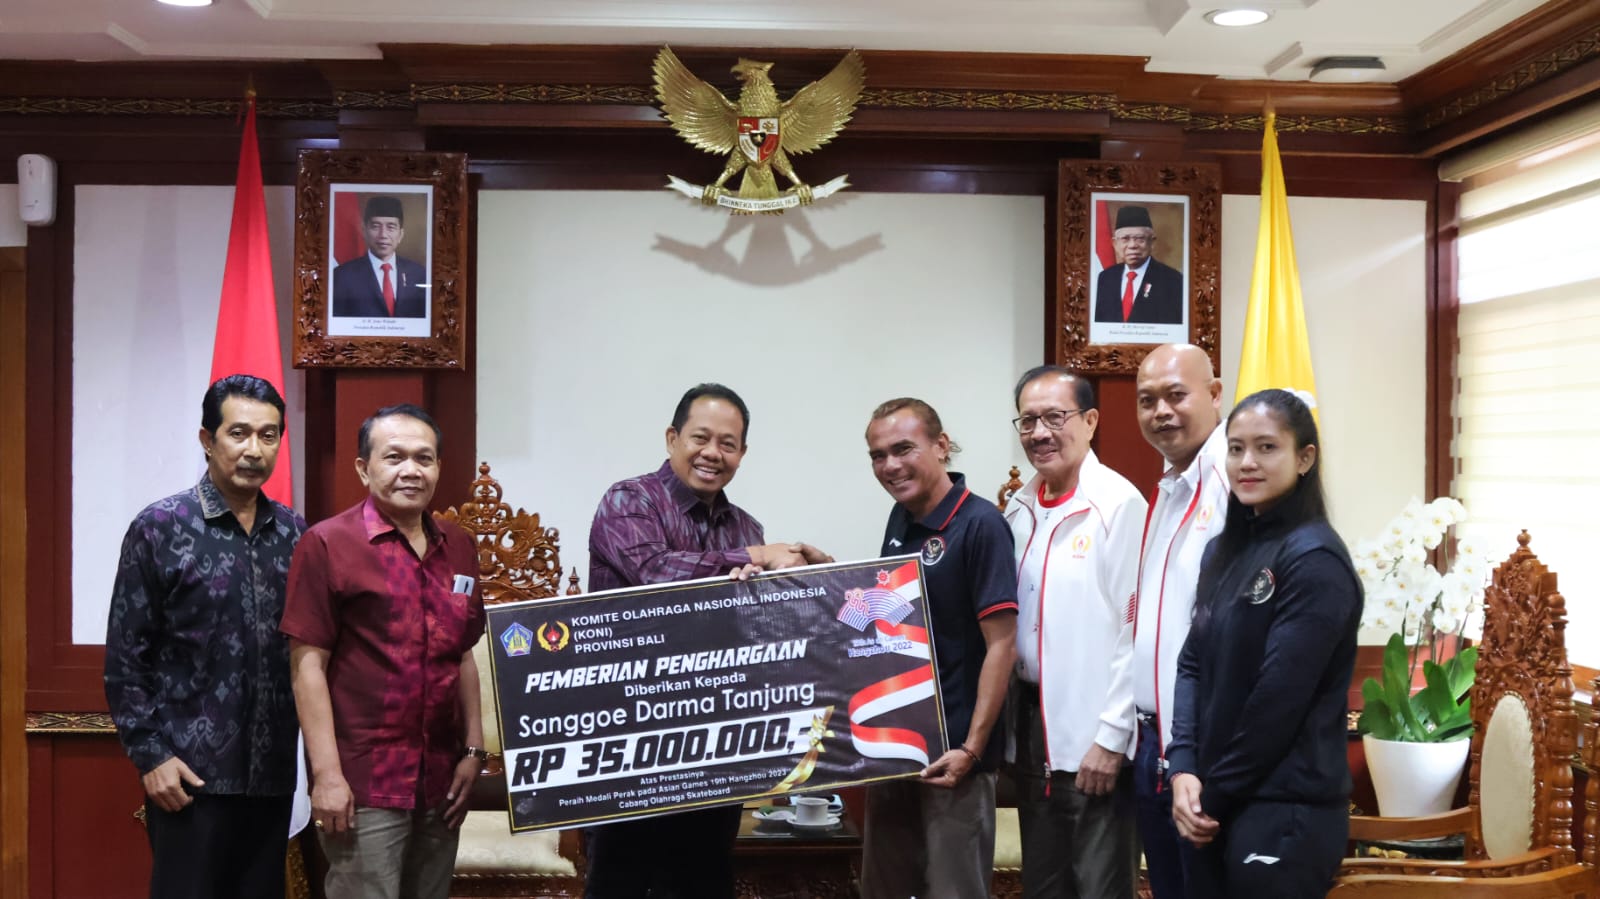 Pj. Gubernur Bali Serahkan Penghargaan dan Bonus Asian Games pada Desak Rita dan Sanggoe Darma Tanjung